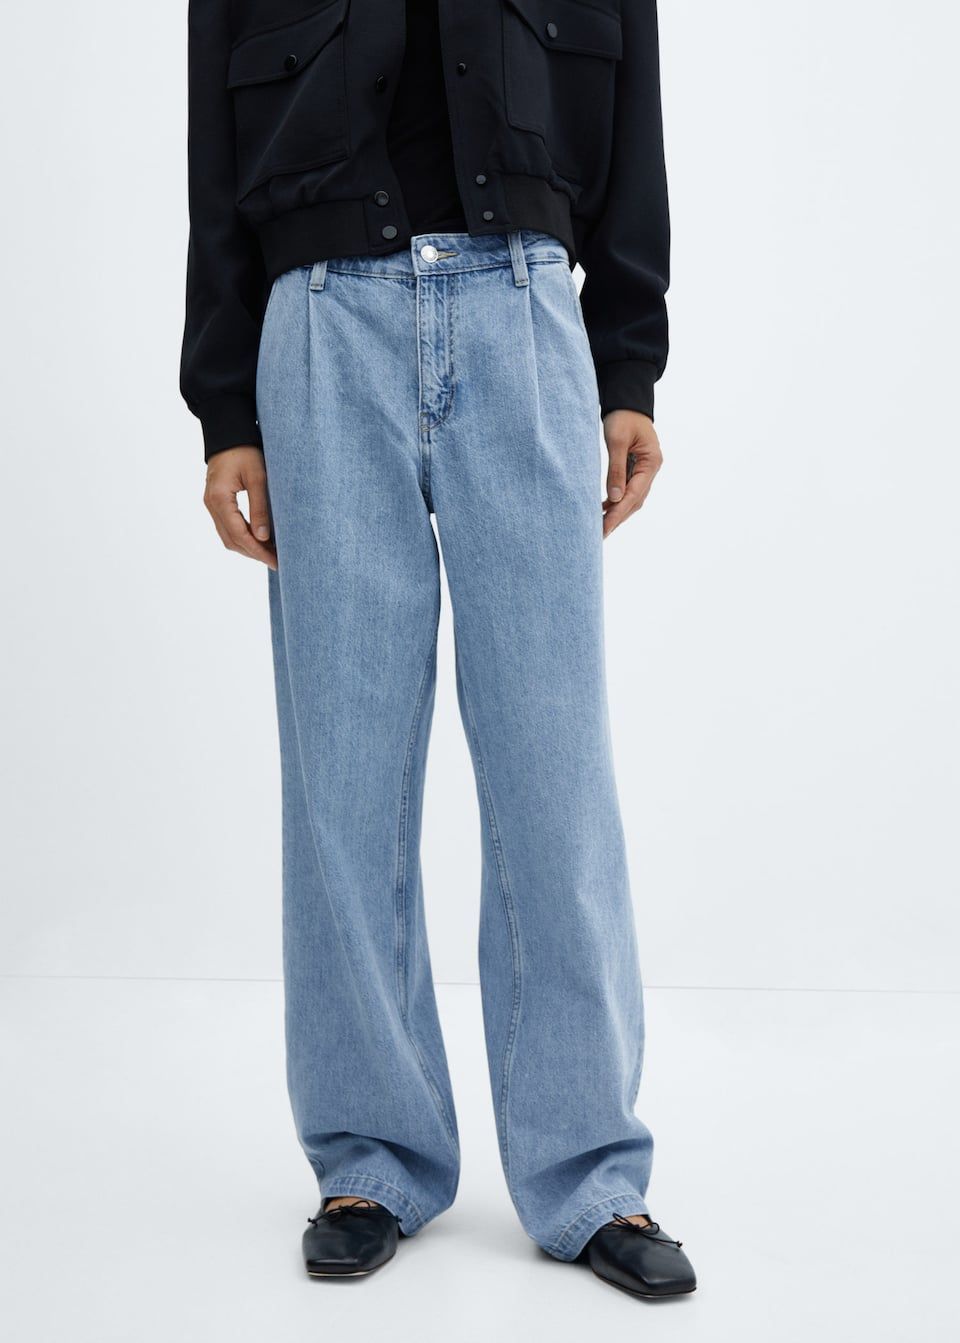 10 pantalones holgados de Zara que todas las estilistas tienen en